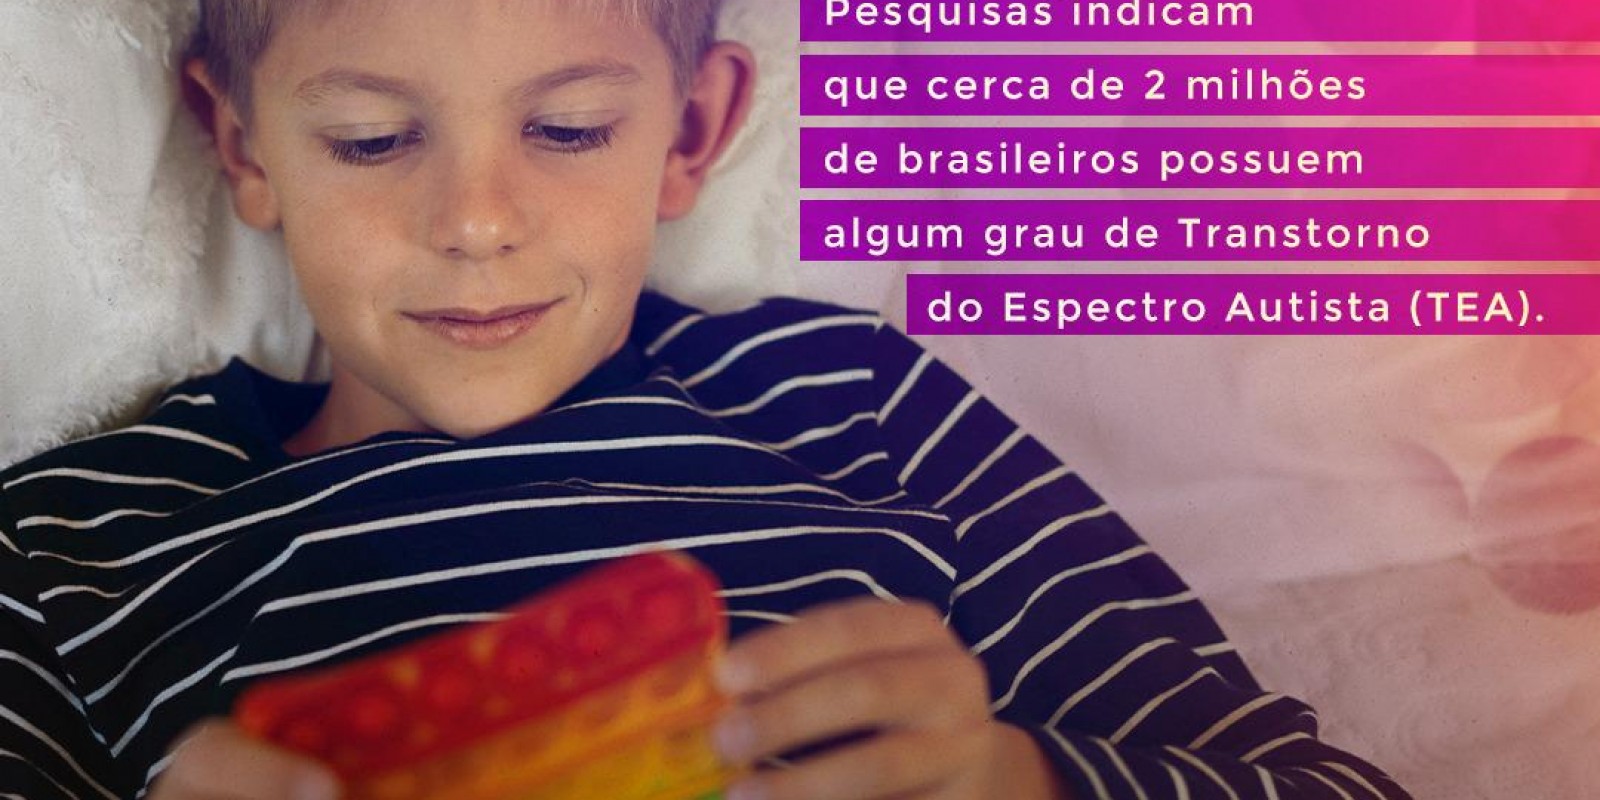 Voce sabia? pesquisas indicam que cerca de 2 milhões de brasileiros possuem algum grau de transtorno de Espectro Autista (TEA).